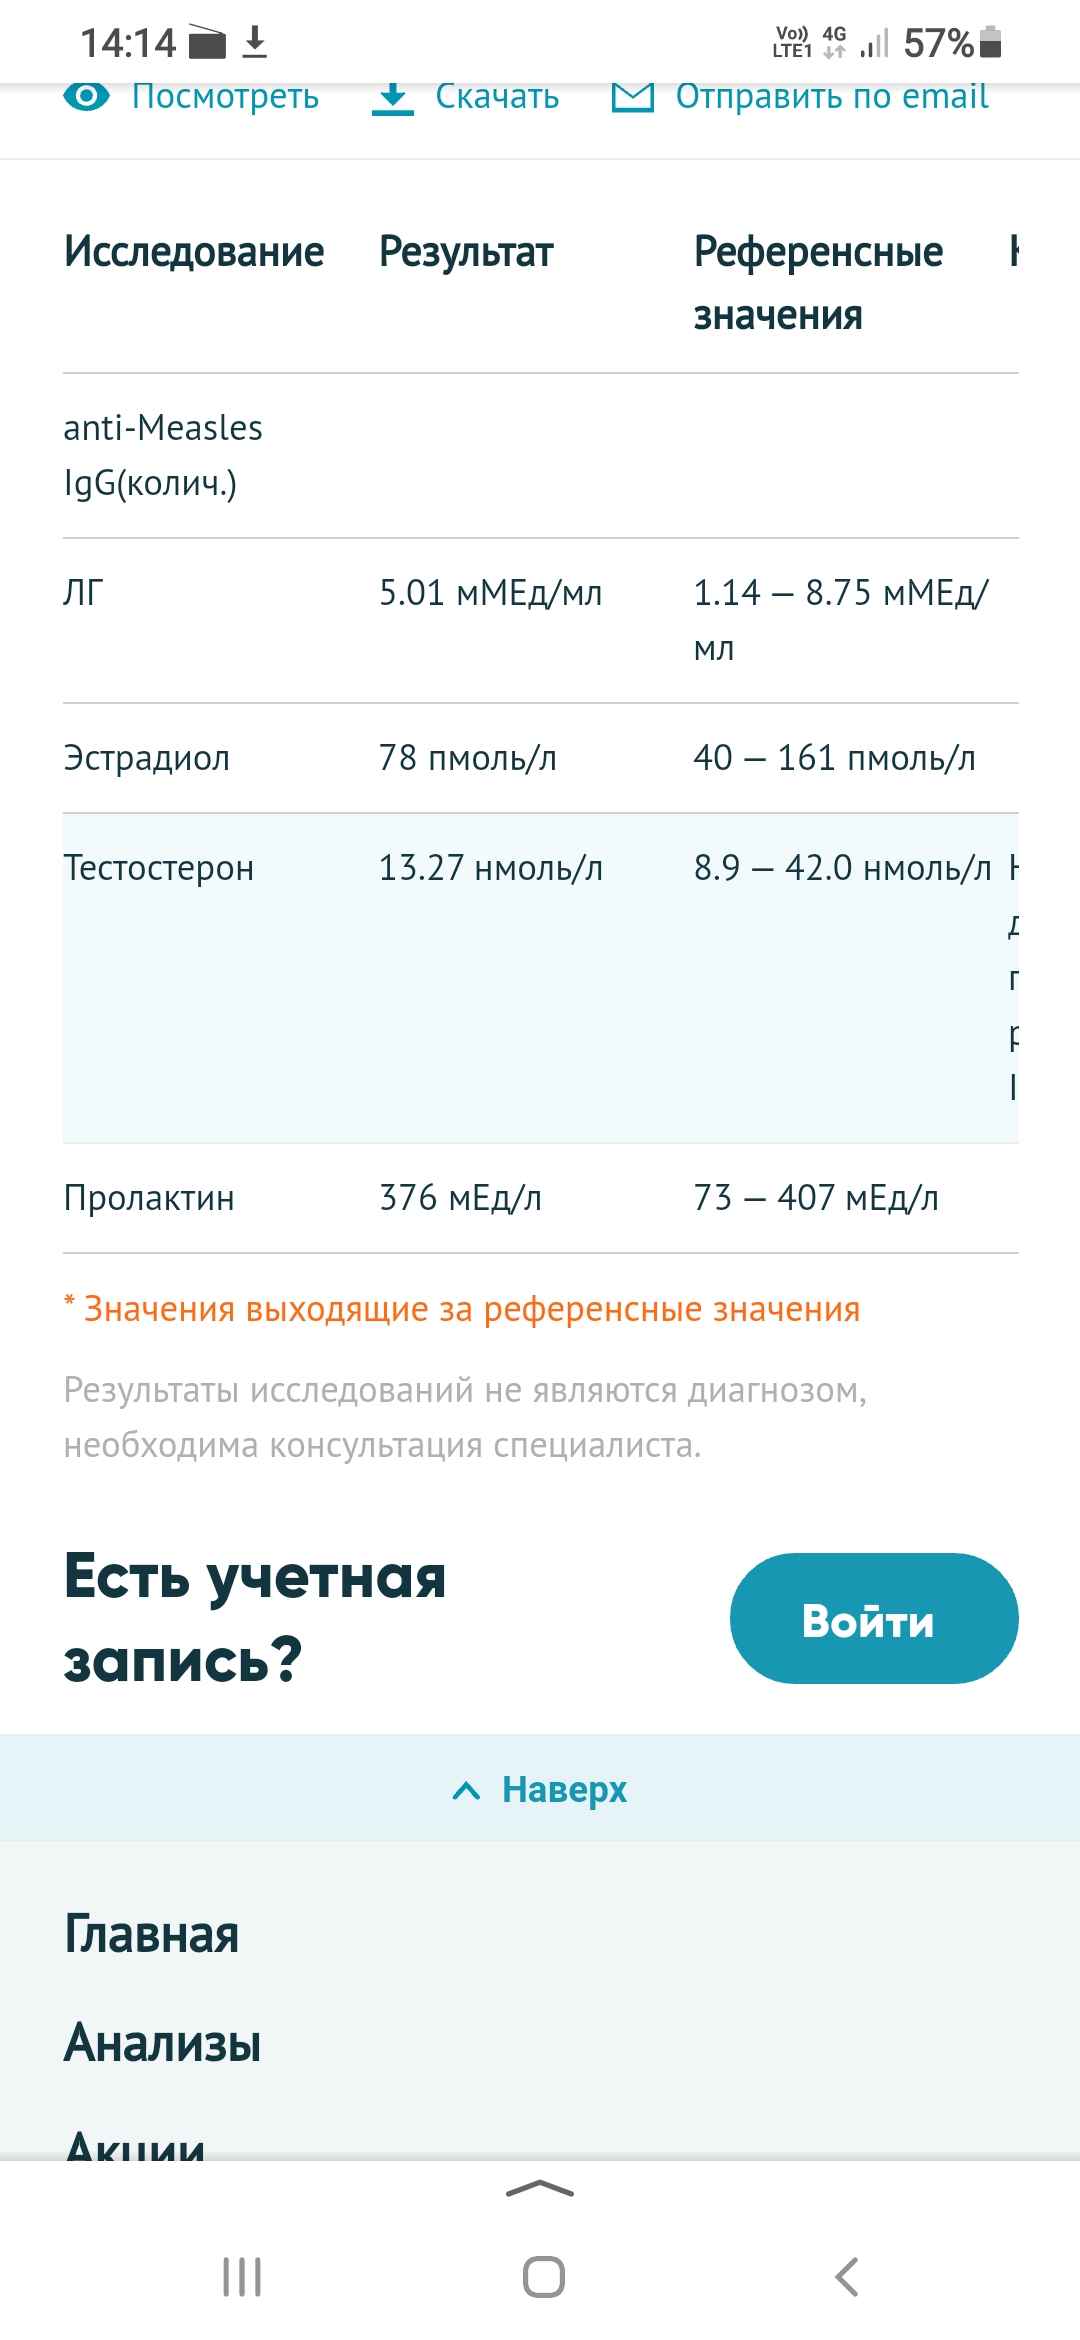 Screenshot_20210908-141458_Yandex.jpg